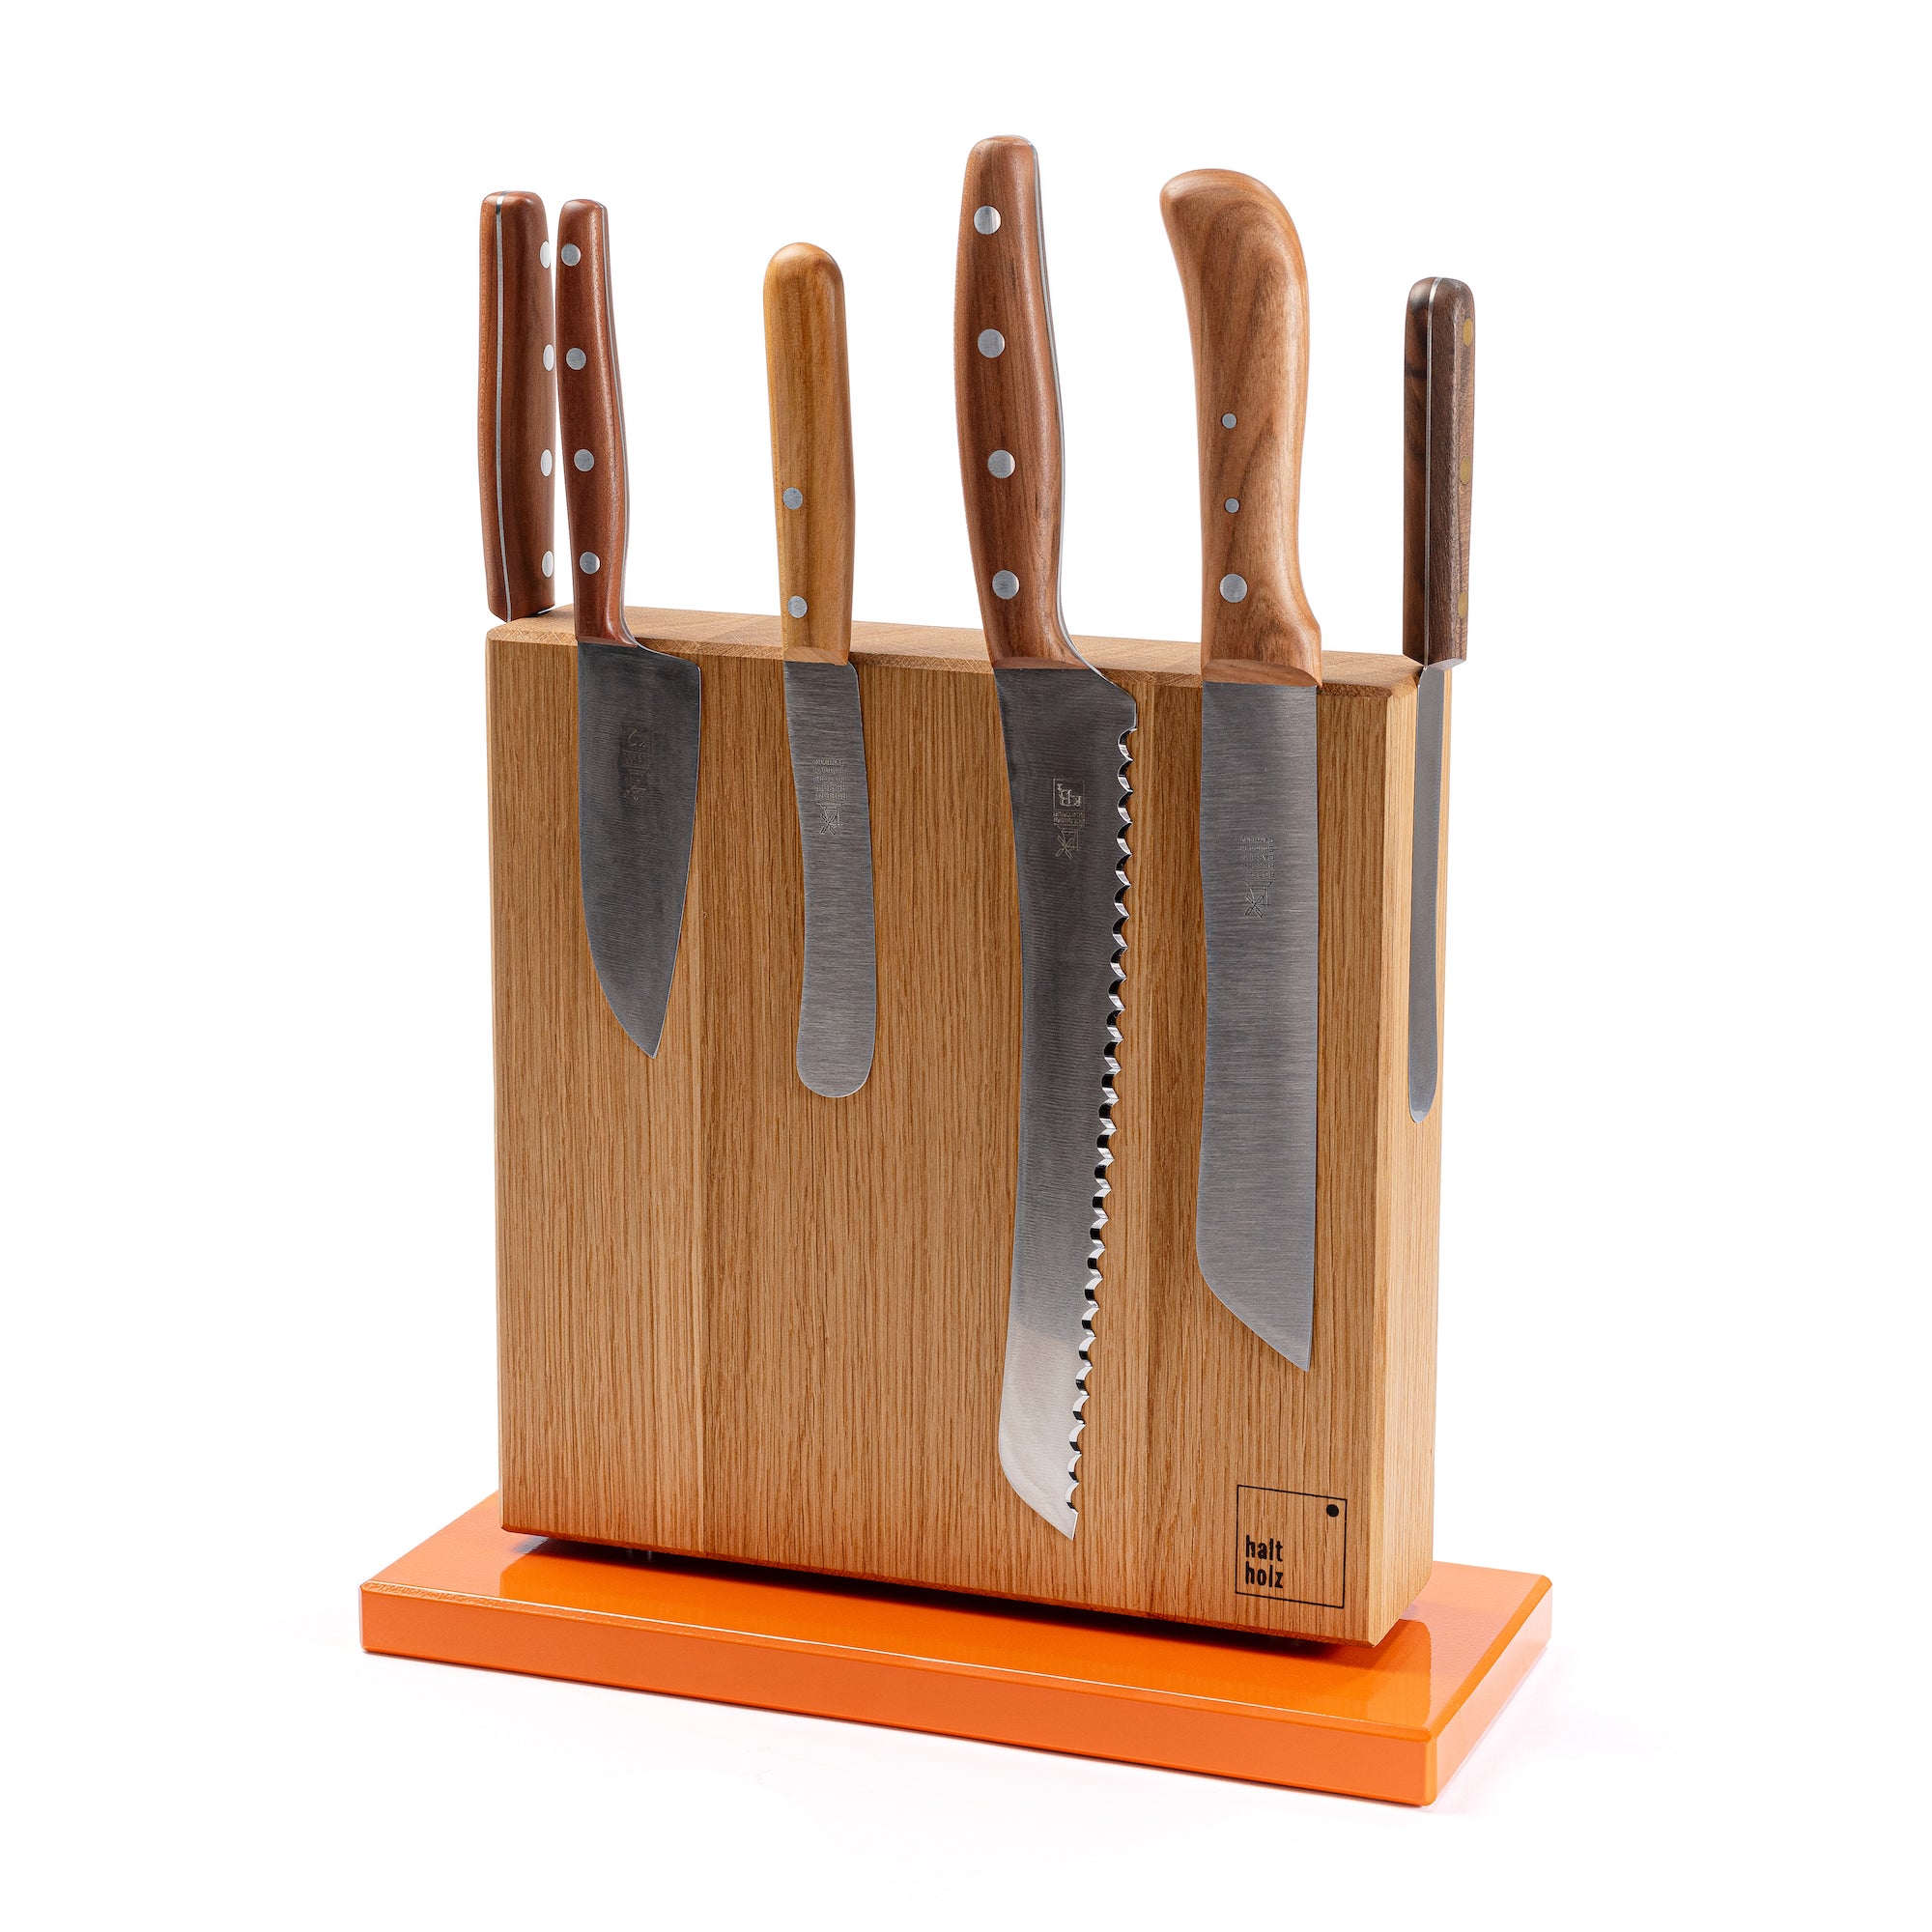 Messerhalter von Haltholz in Eiche mit orangenem Stahlsockel und Kochmesser von Windmühlenmesser.